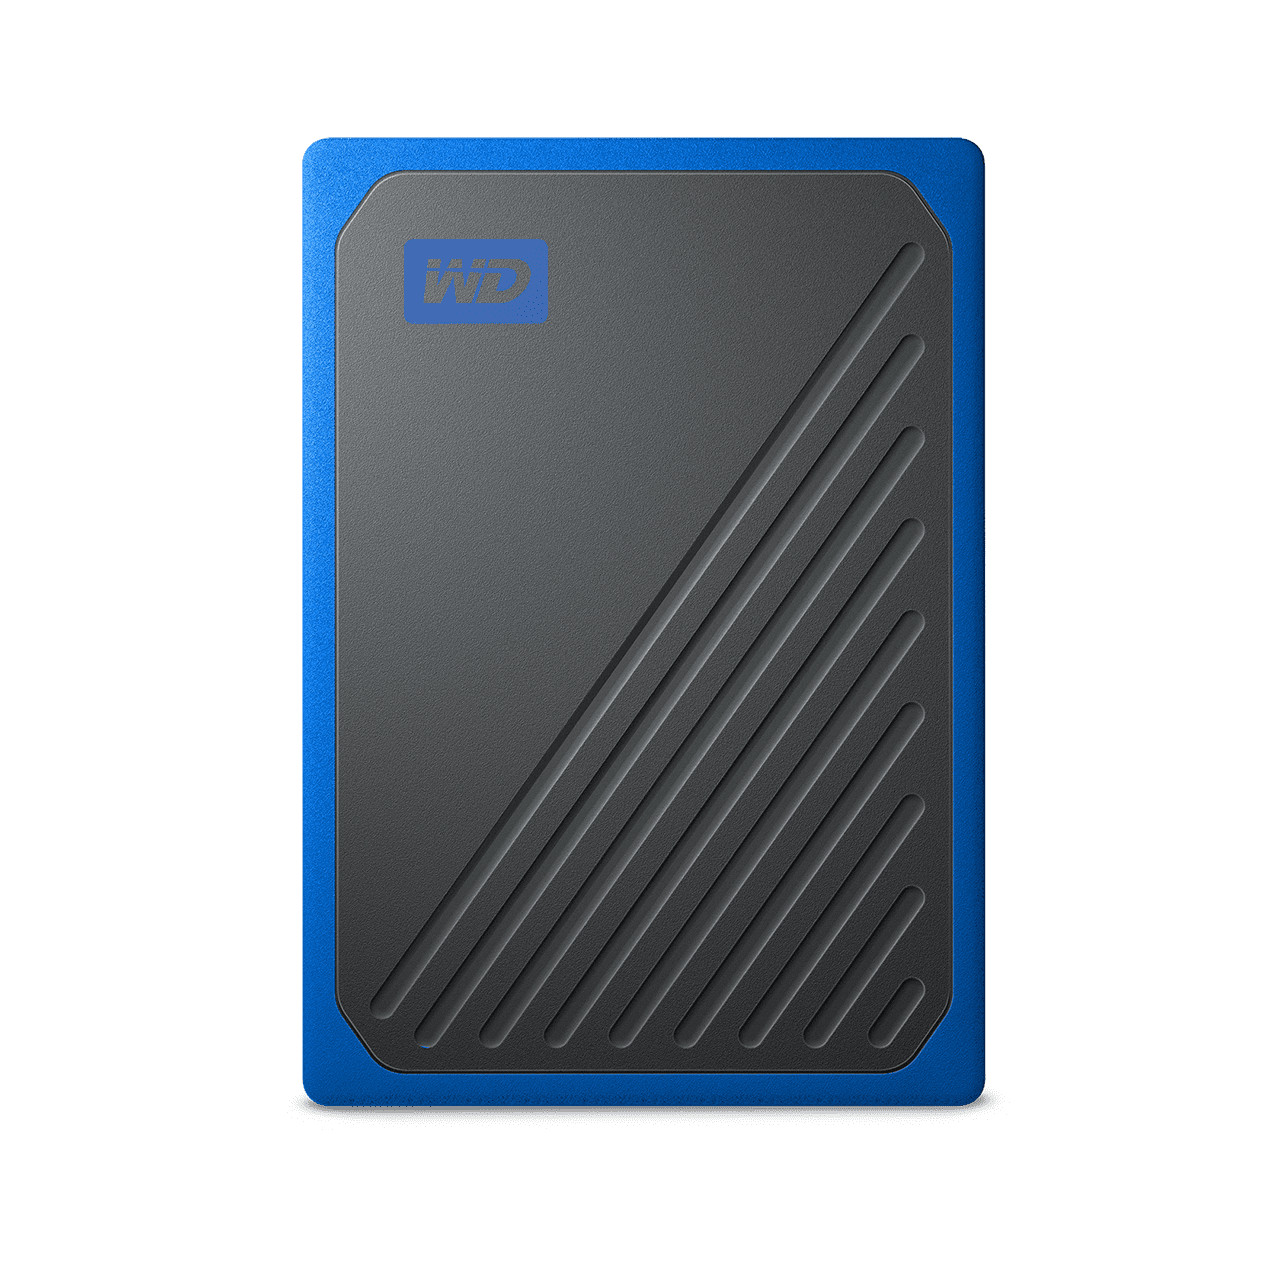 Ổ cứng SSD Di Động WD My Passport Go 500GB USB 3.0 - Hàng Chính Hãng